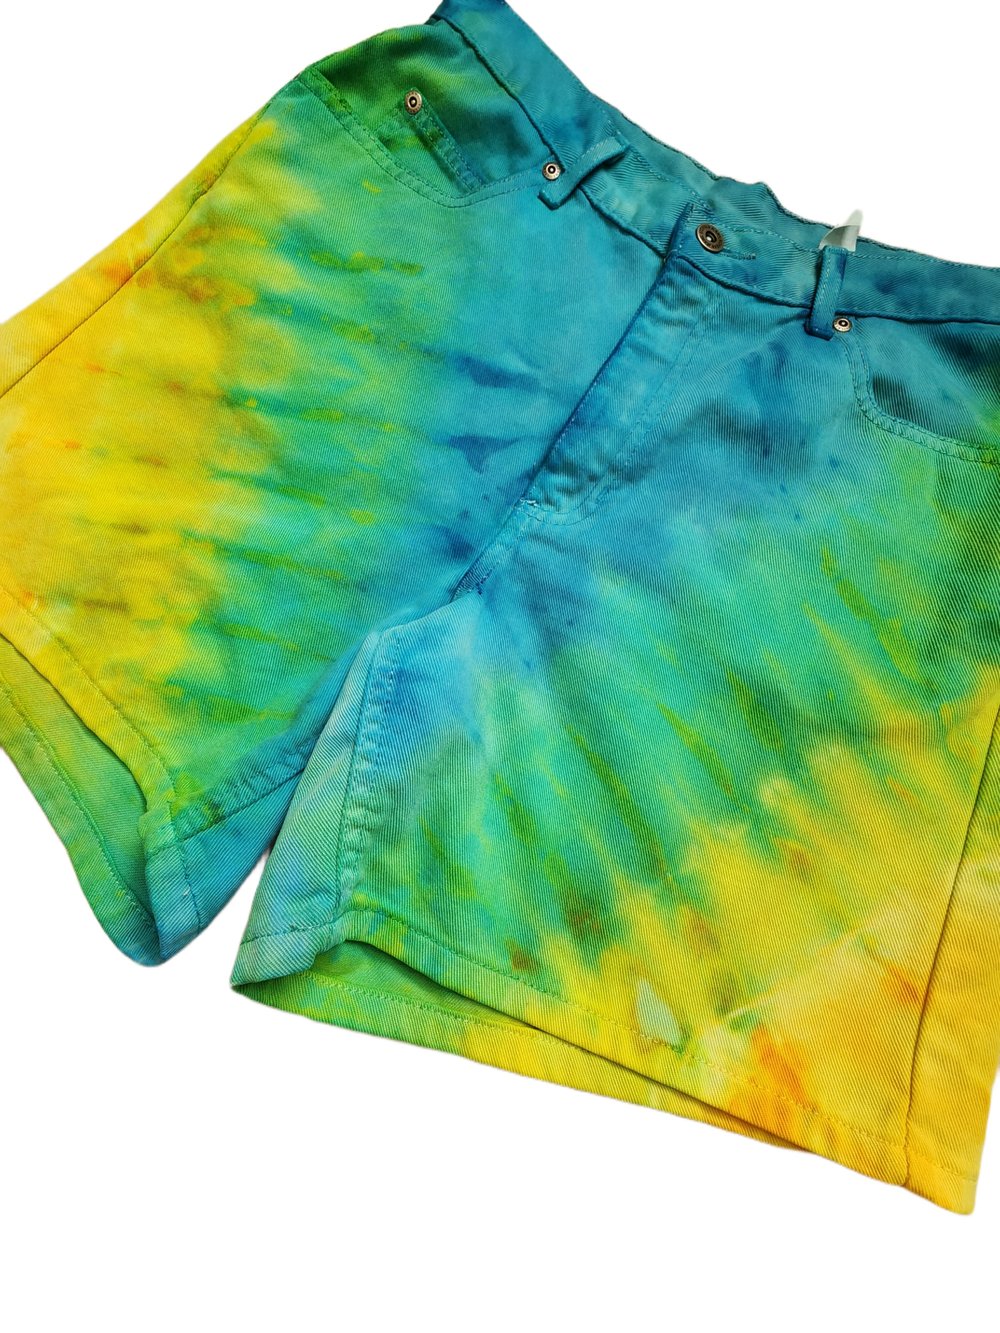 Image of Size 12 or Large sunshine denim shorts